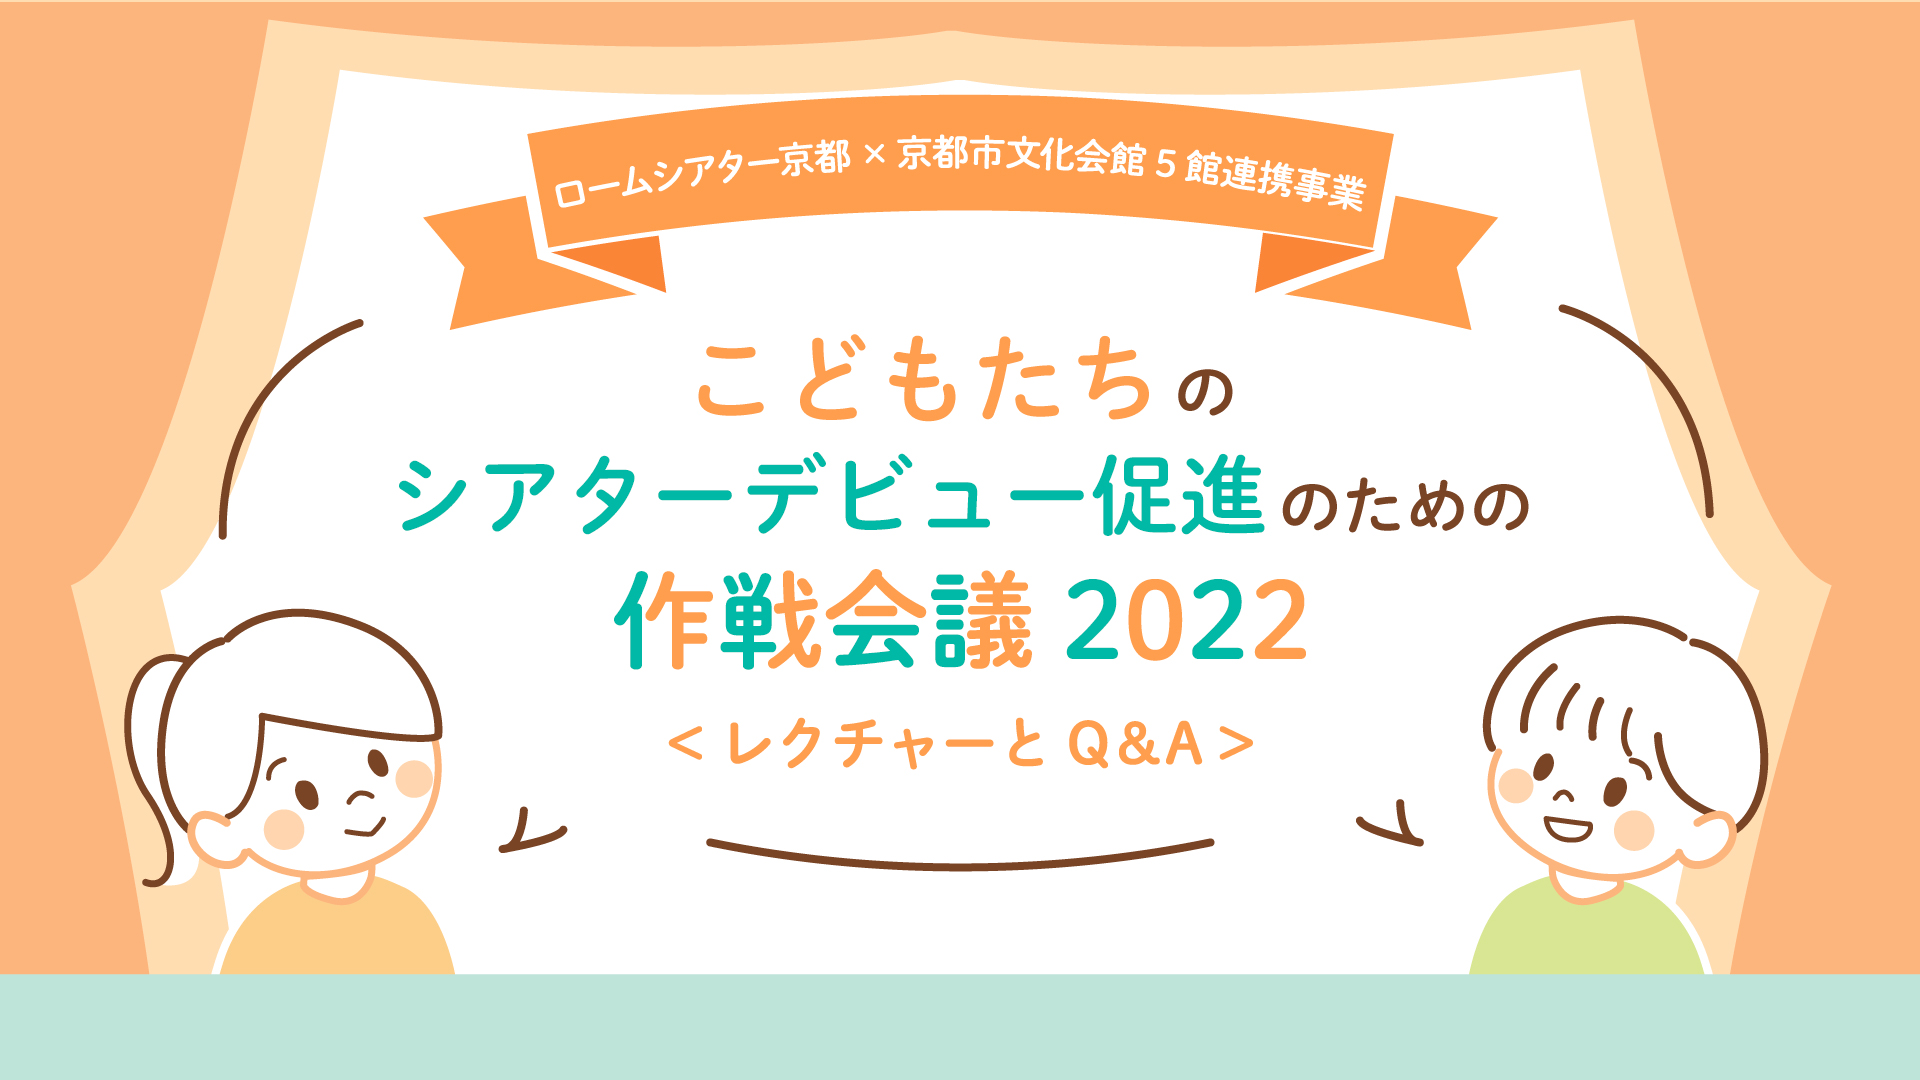 ロームシアター京都×京都市文化会館5館連携事業こどもたちのシアターデビュー促進のための作戦会議2022 (3月21日開催) 　参加者募集